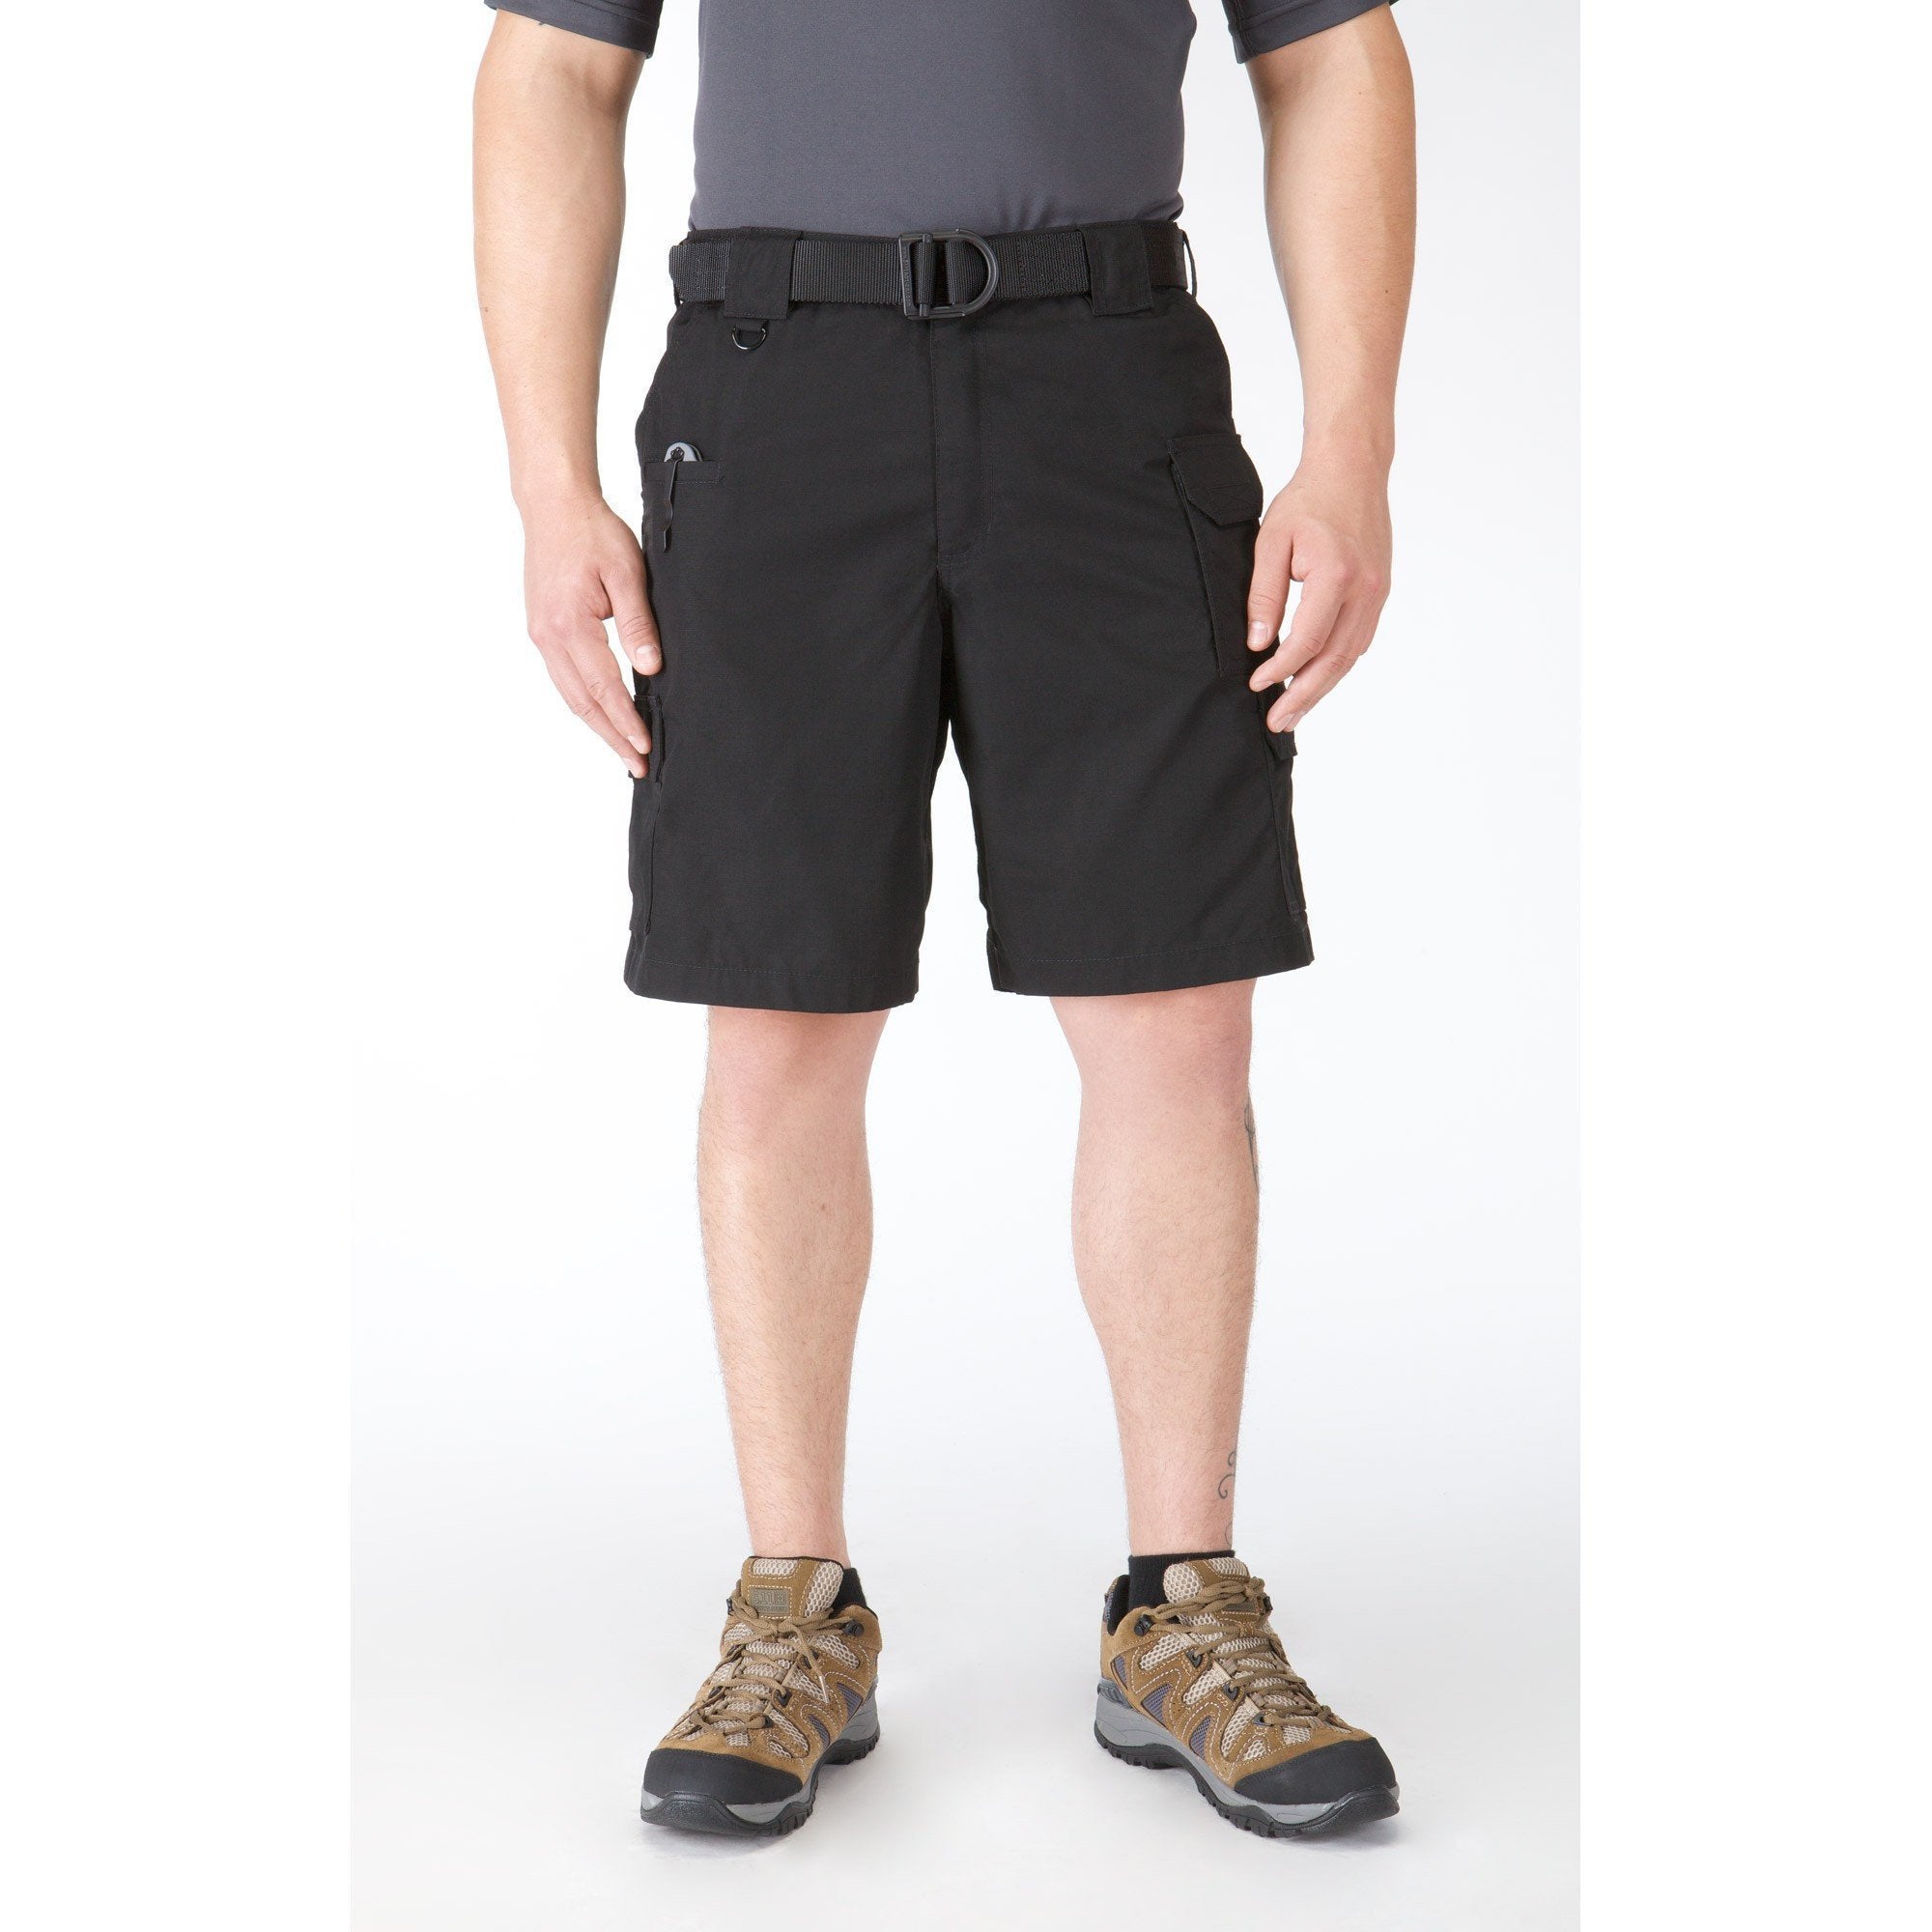 5.11 Taclite Pro Shorts Shorts 5.11 Tactical Black 28 Tactical Gear Supplier Tactical Distributors Australia